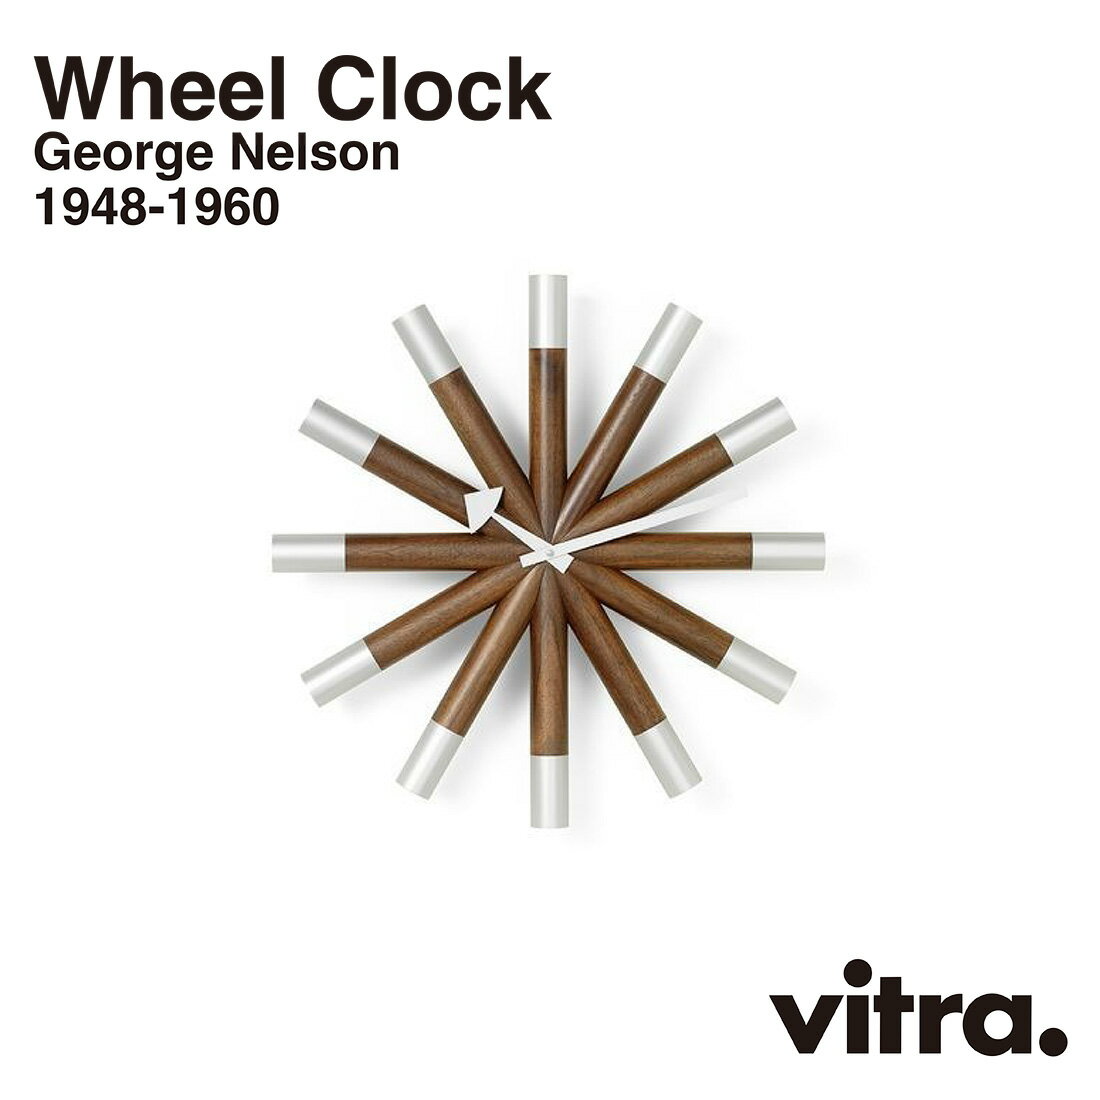 vitra ヴィトラ Wheel Clock ホイールクロック Wall Clocks ウォールクロック GeorgeNelson ジョージ・ネルソン 時計 掛時計 インテリア 北欧 スイス